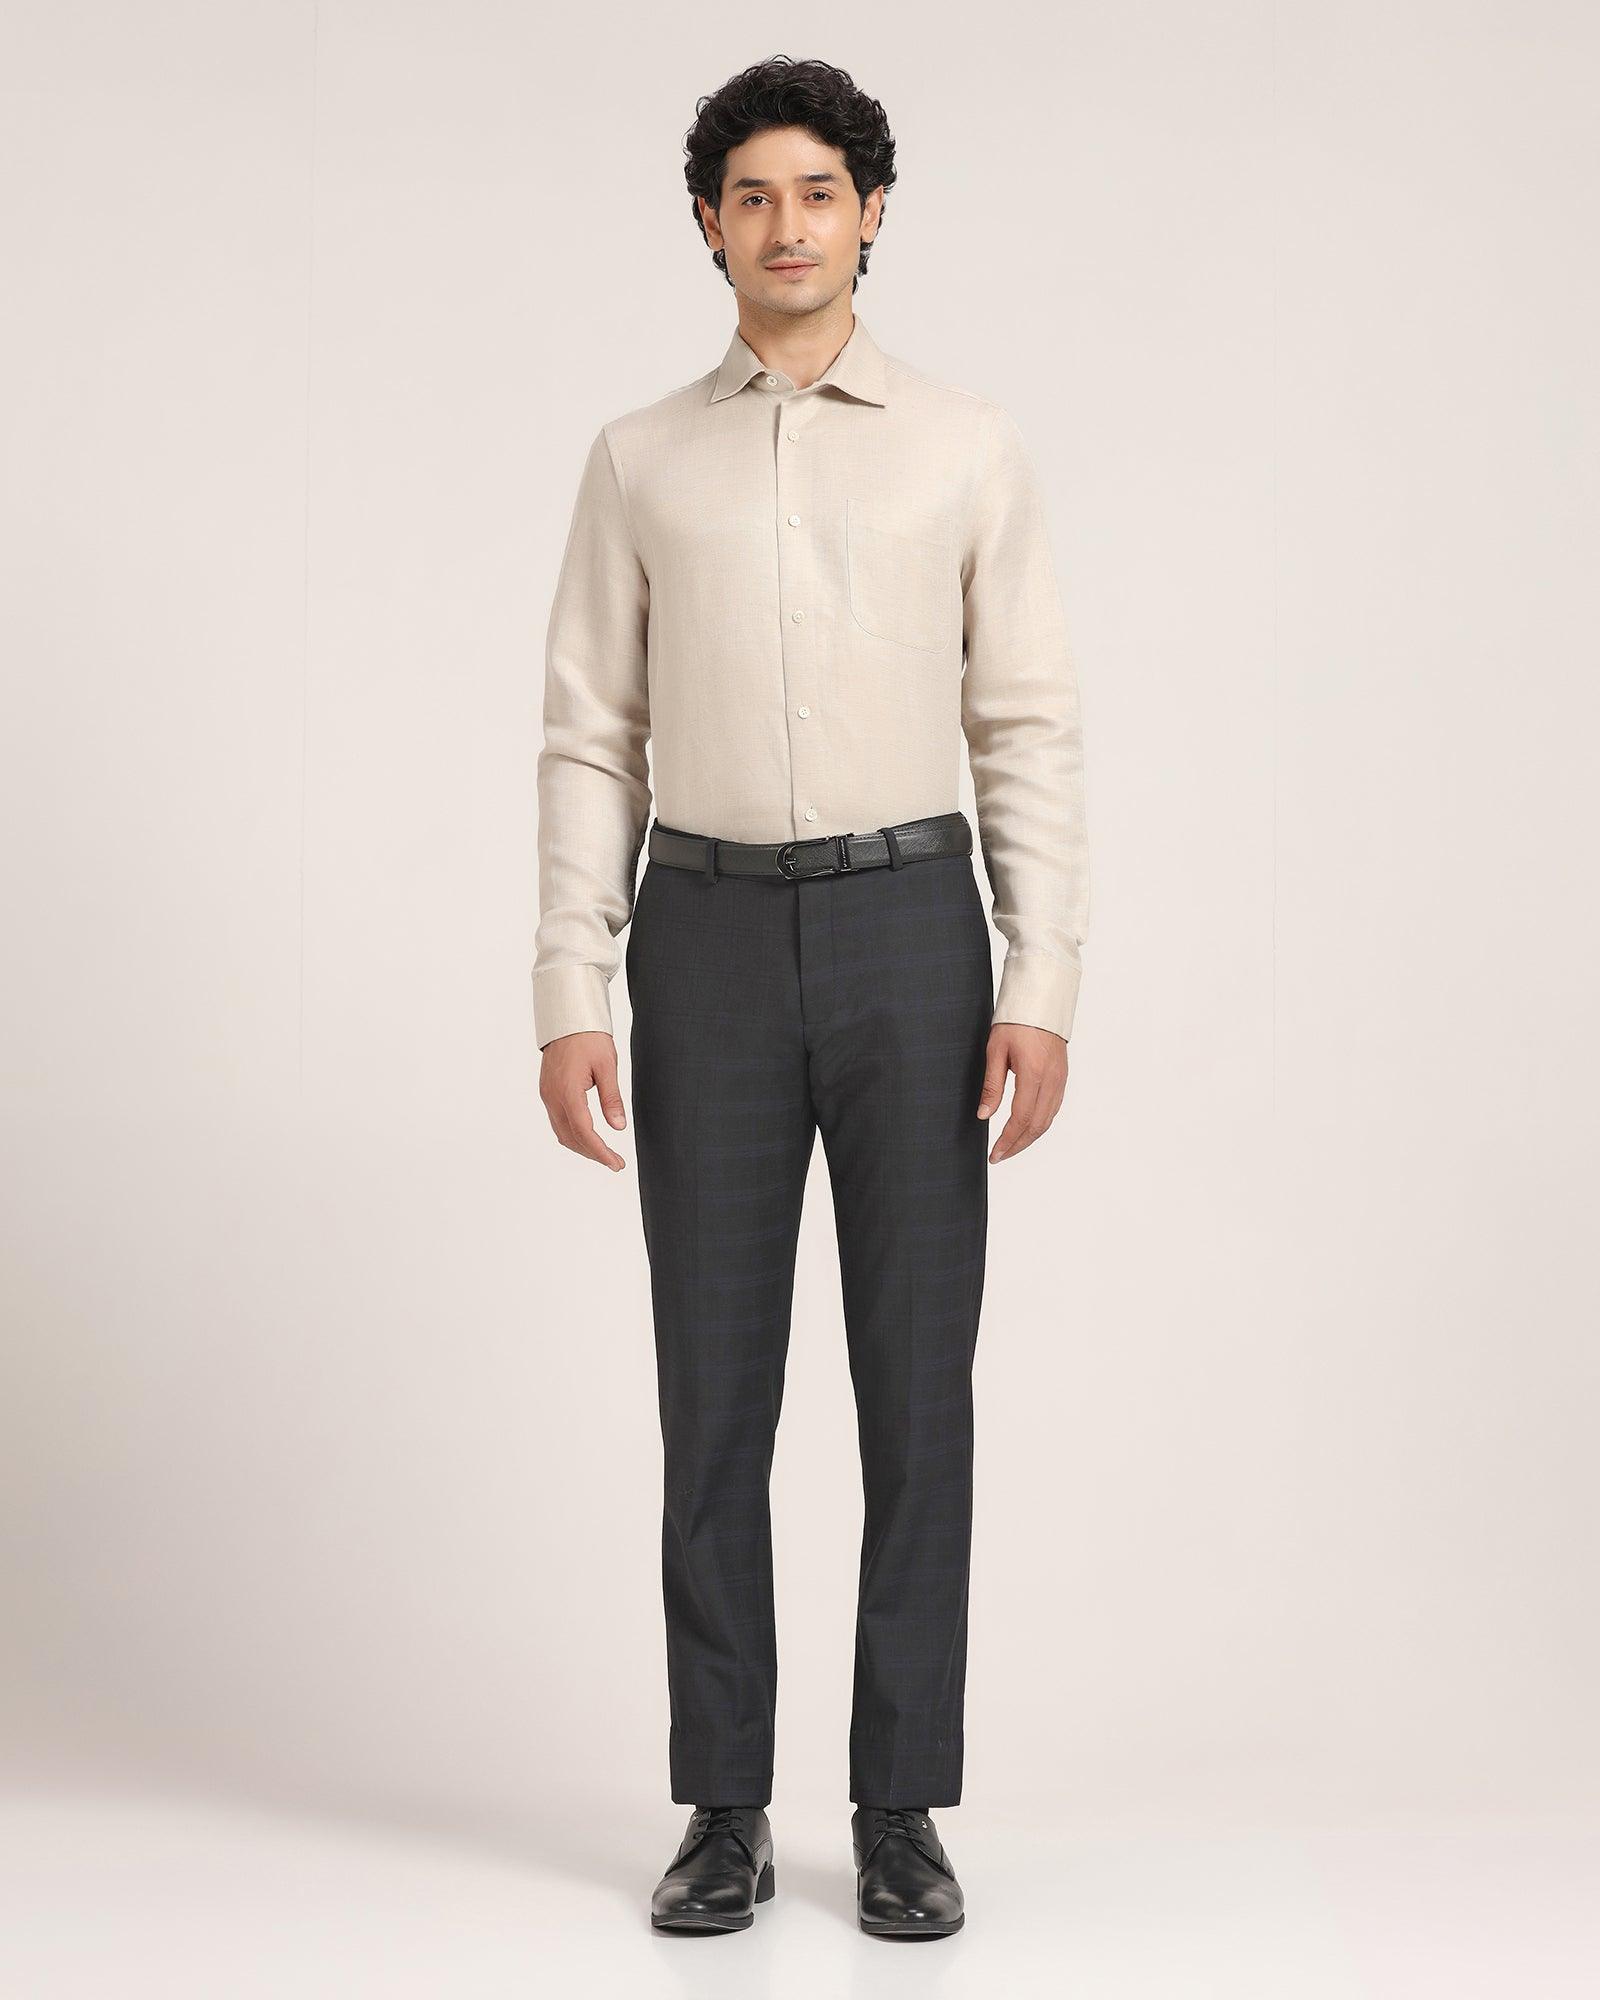 Men Bell Bottom Pants Warm Lined 60s 70s Retro Flare Formal Dress Trouser  Slim | eBay